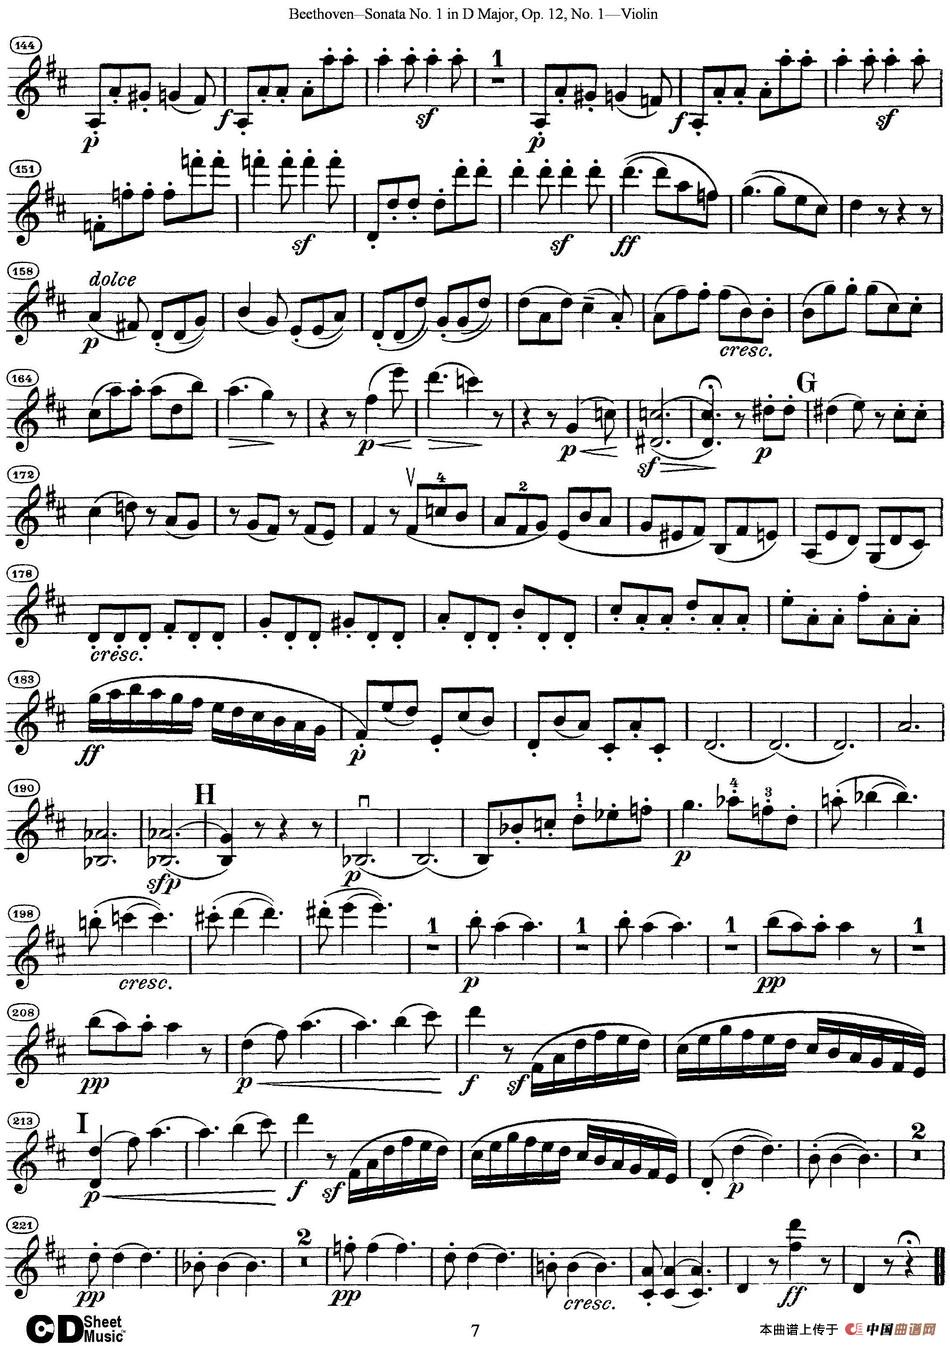 Violin Sonata No.1 in D Major Op.12 No.1_3